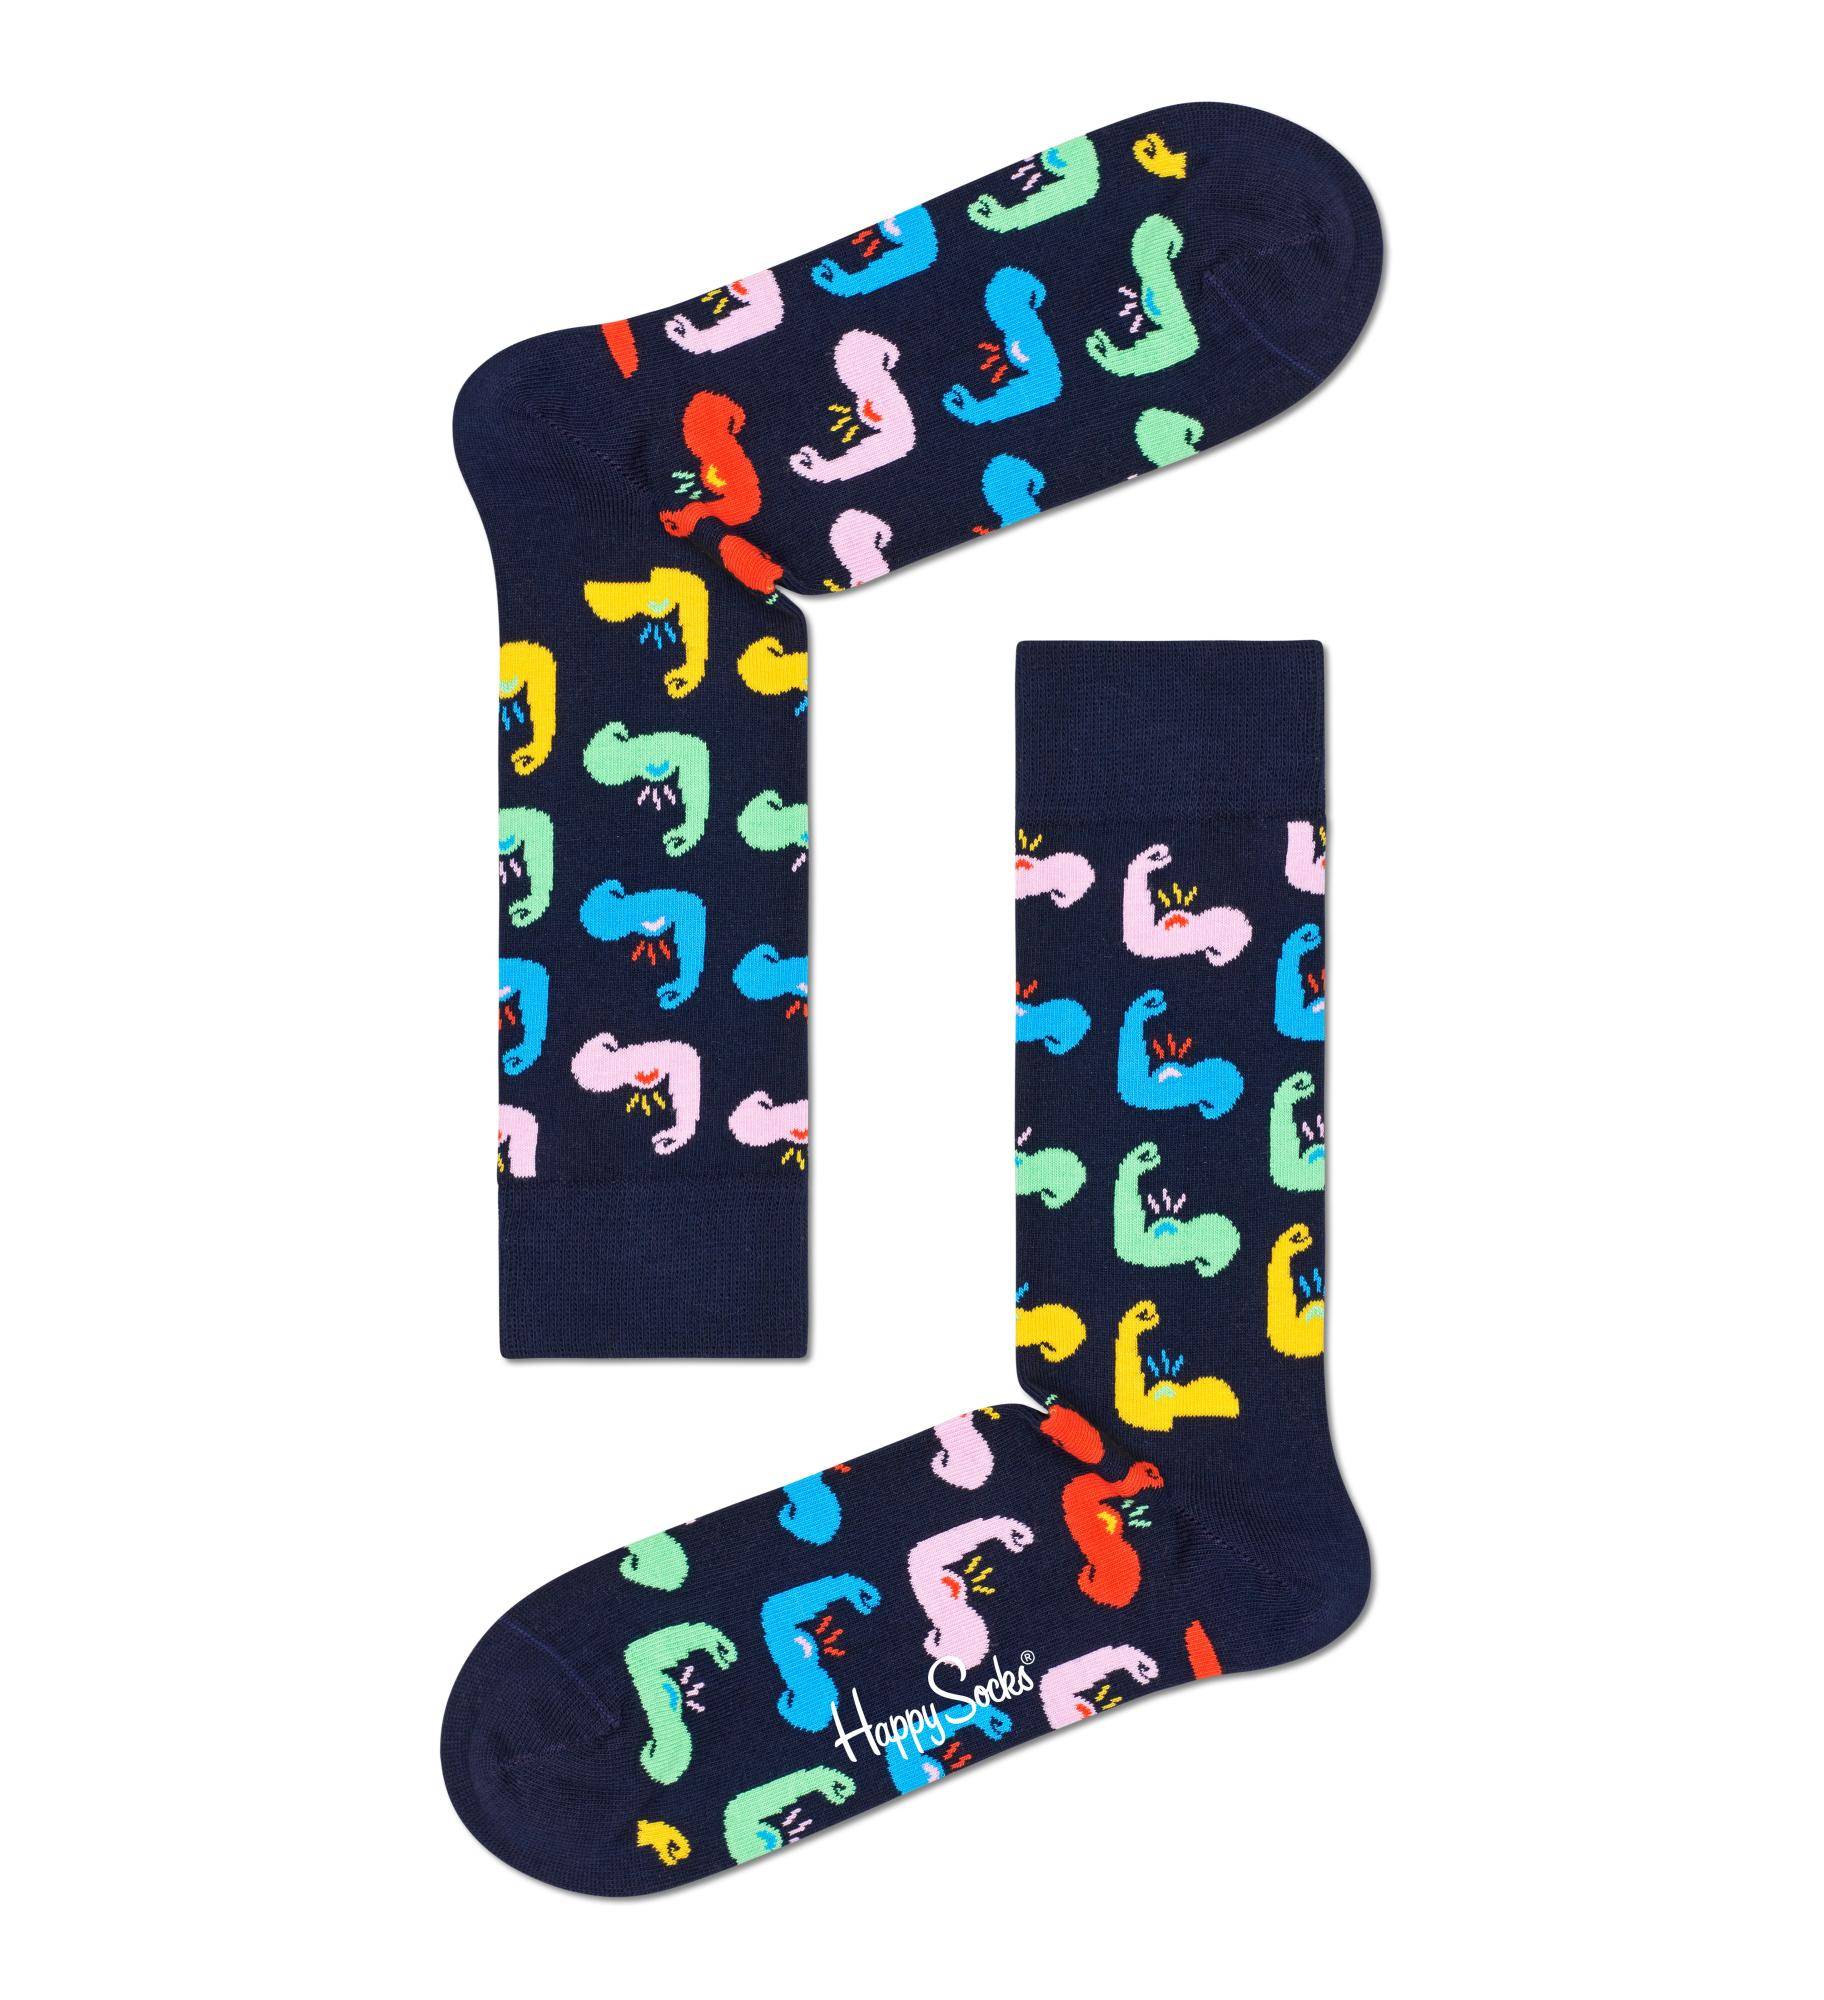 Носки Happy socks Stop Wildlife Trade Sock STO01 6500, размер 29